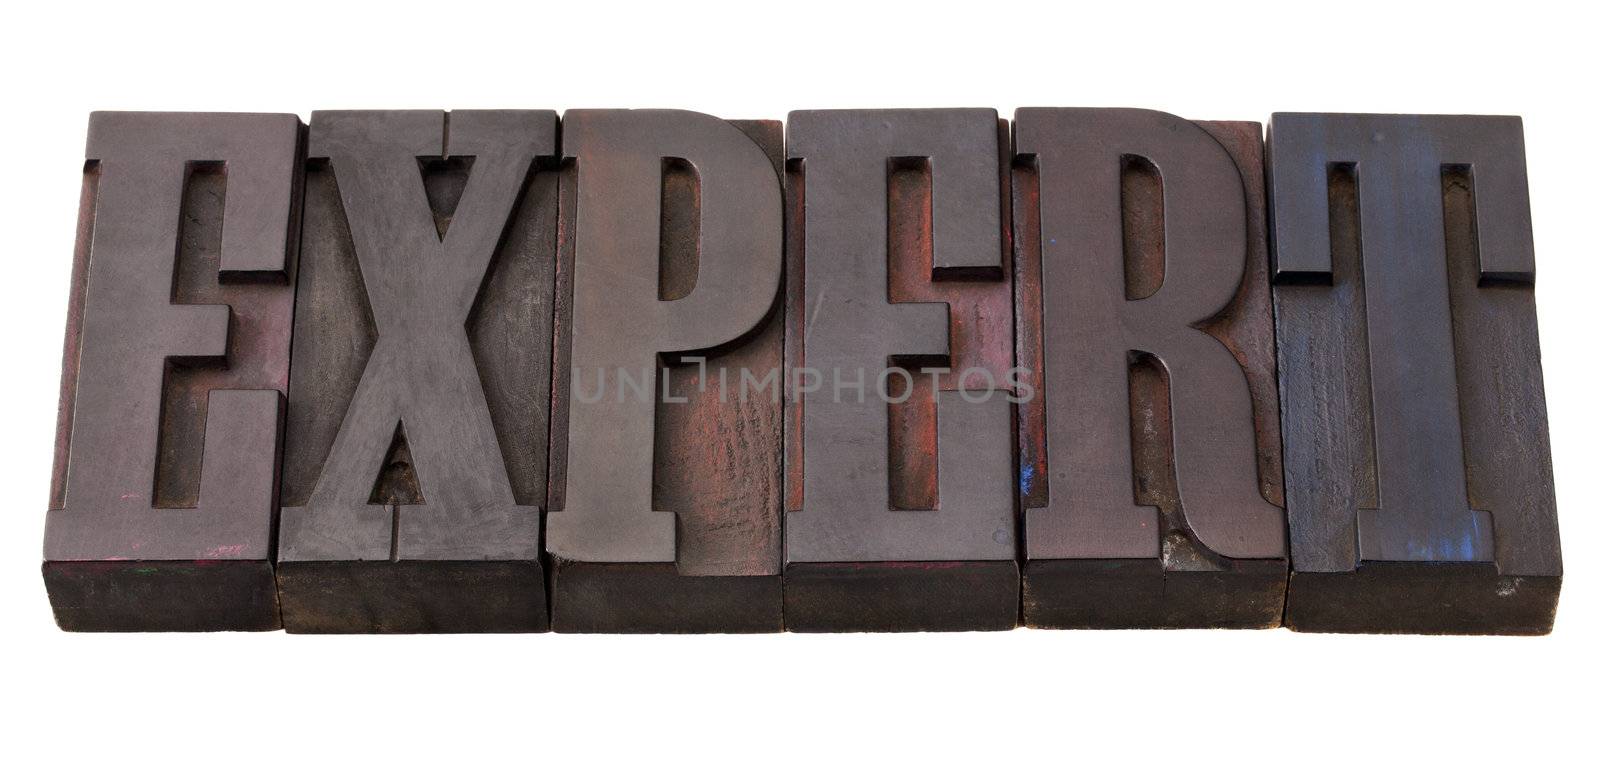 expert word in letterpress type by PixelsAway